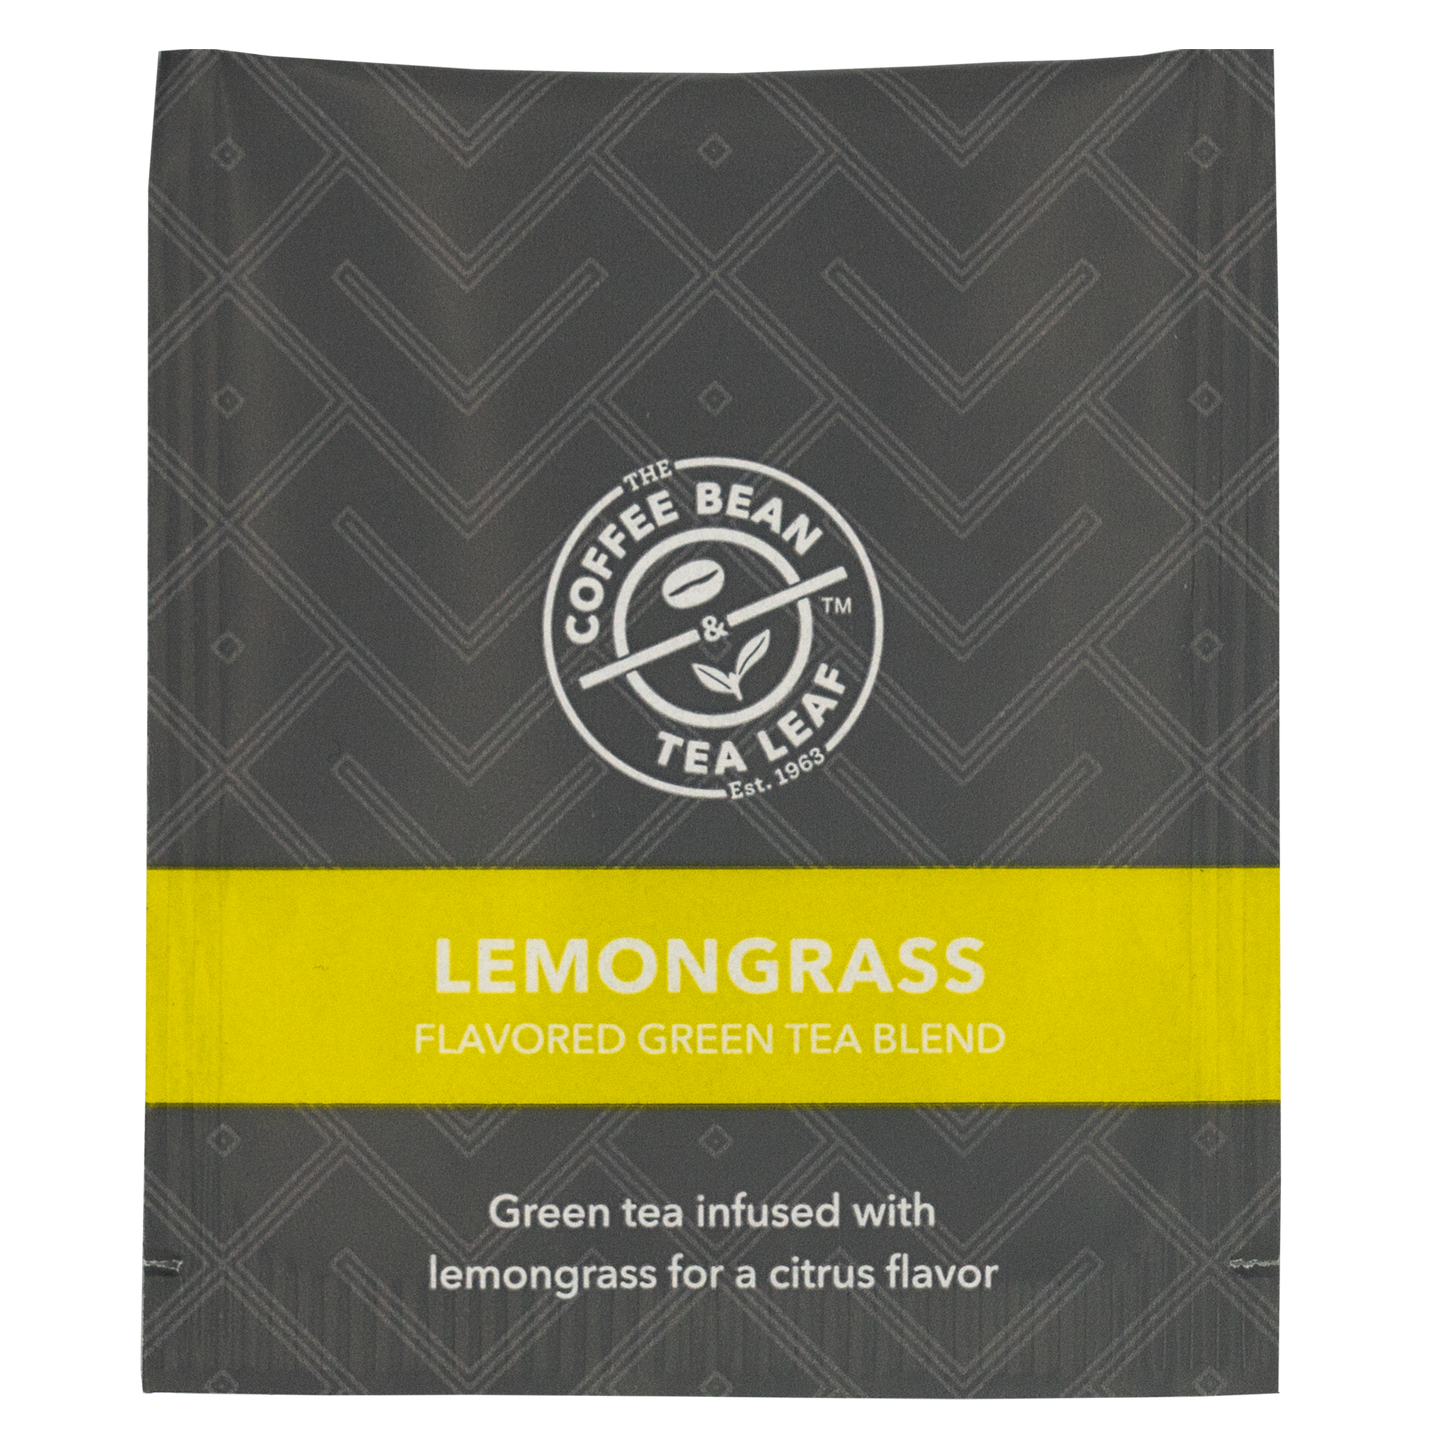 CBTL Lemongrass Green Tea Bag